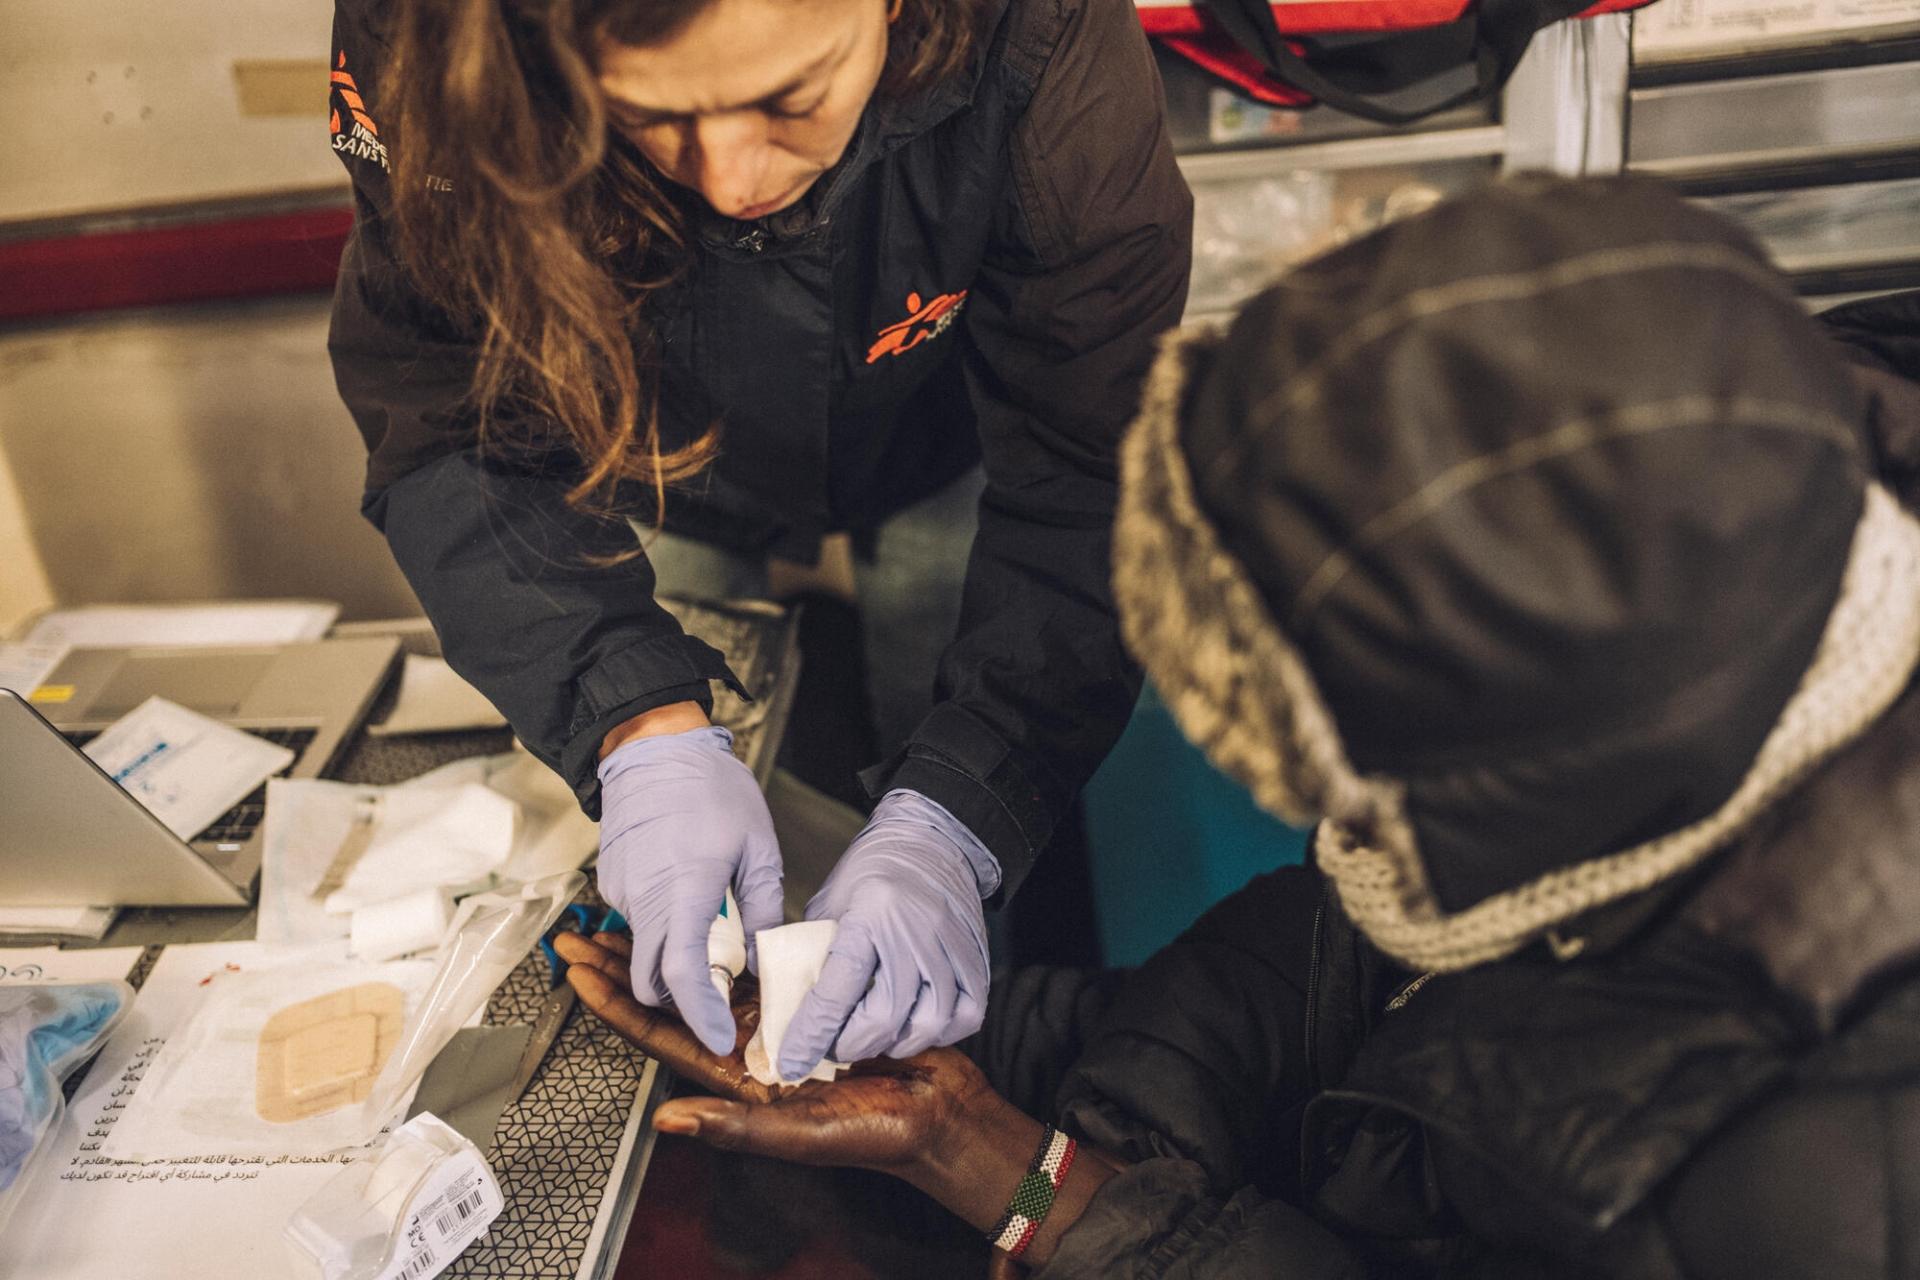 Une infirmière MSF prodigue des soins à la main d’un migrant d’origine soudanaise. Les traumatismes physiques et les petites excoriations sont très fréquents parmi les personnes exilées qui survivent dans des campements insalubres et tentent quotidiennement de monter à bord de camions en direction du Royaume-Uni.